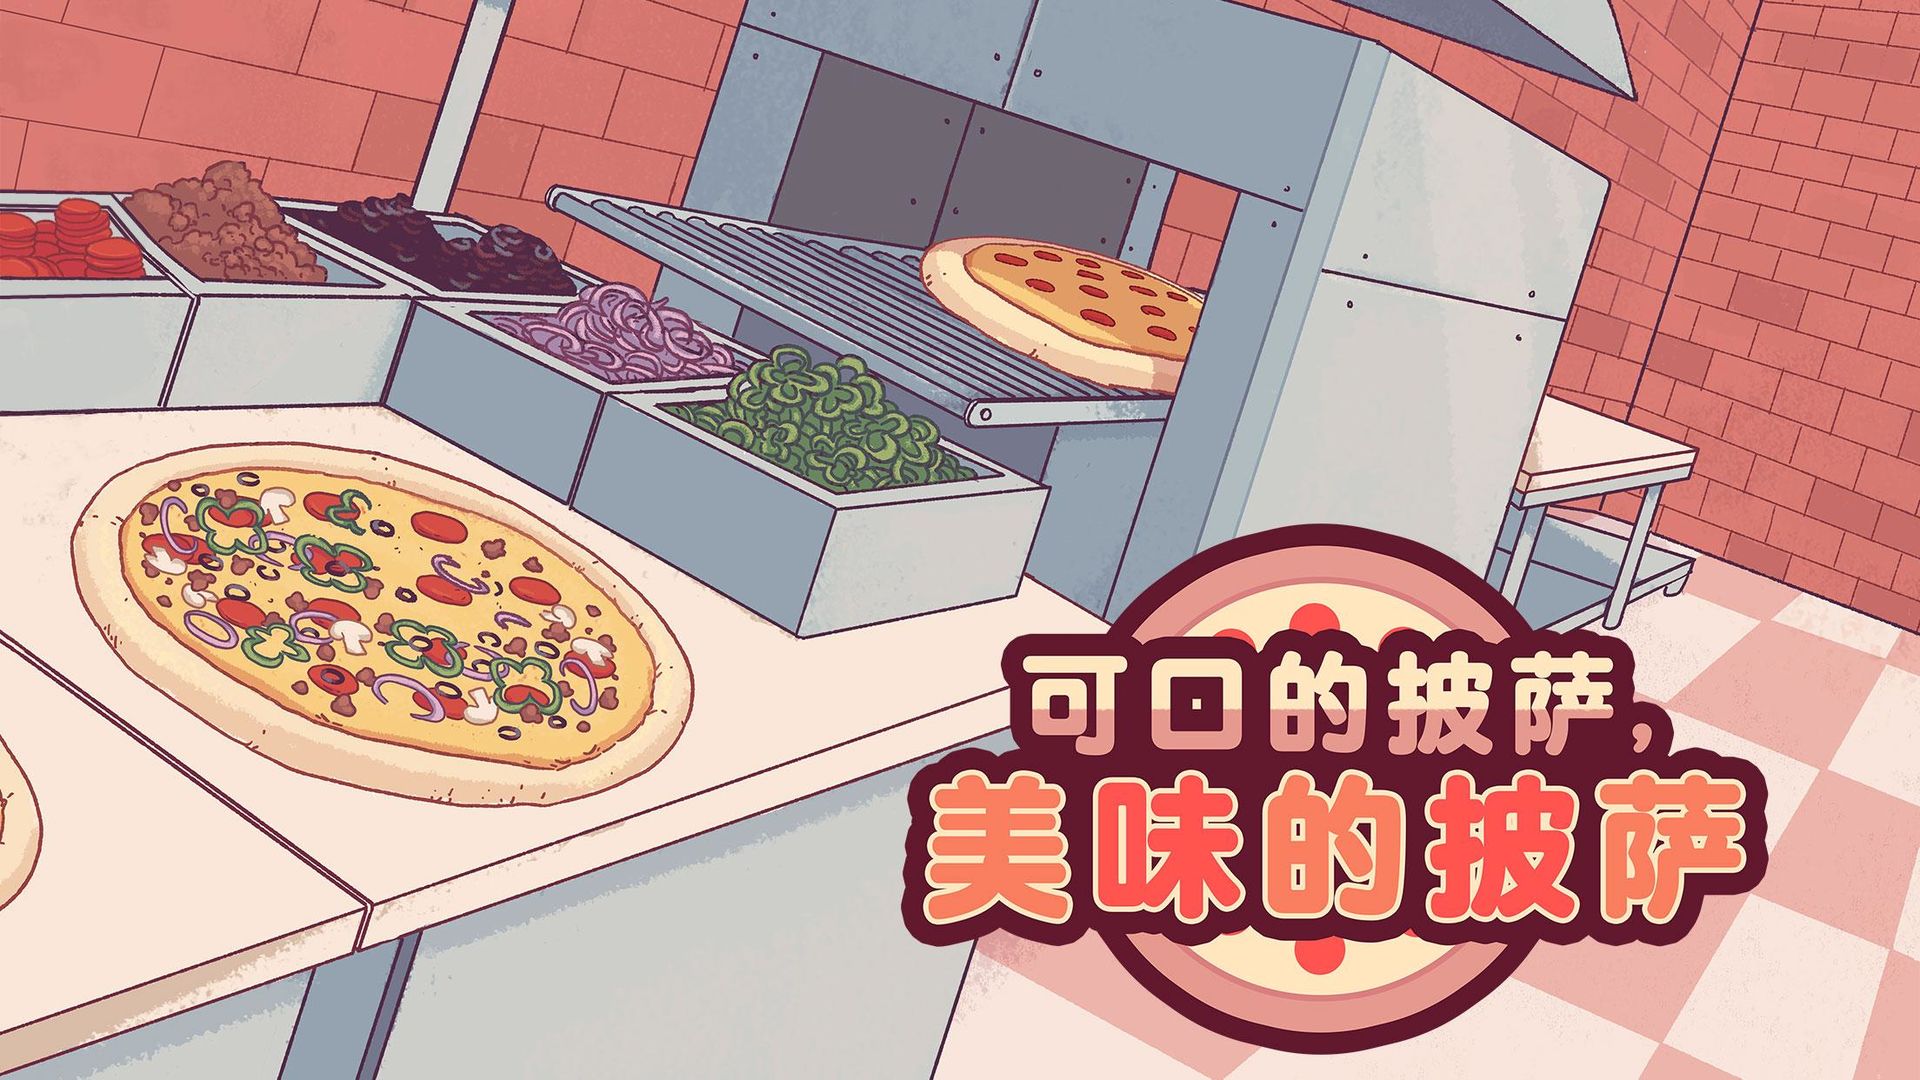 可口的披萨美味的披萨中文版排行最新版 可口的披萨美味的披萨中文版排行